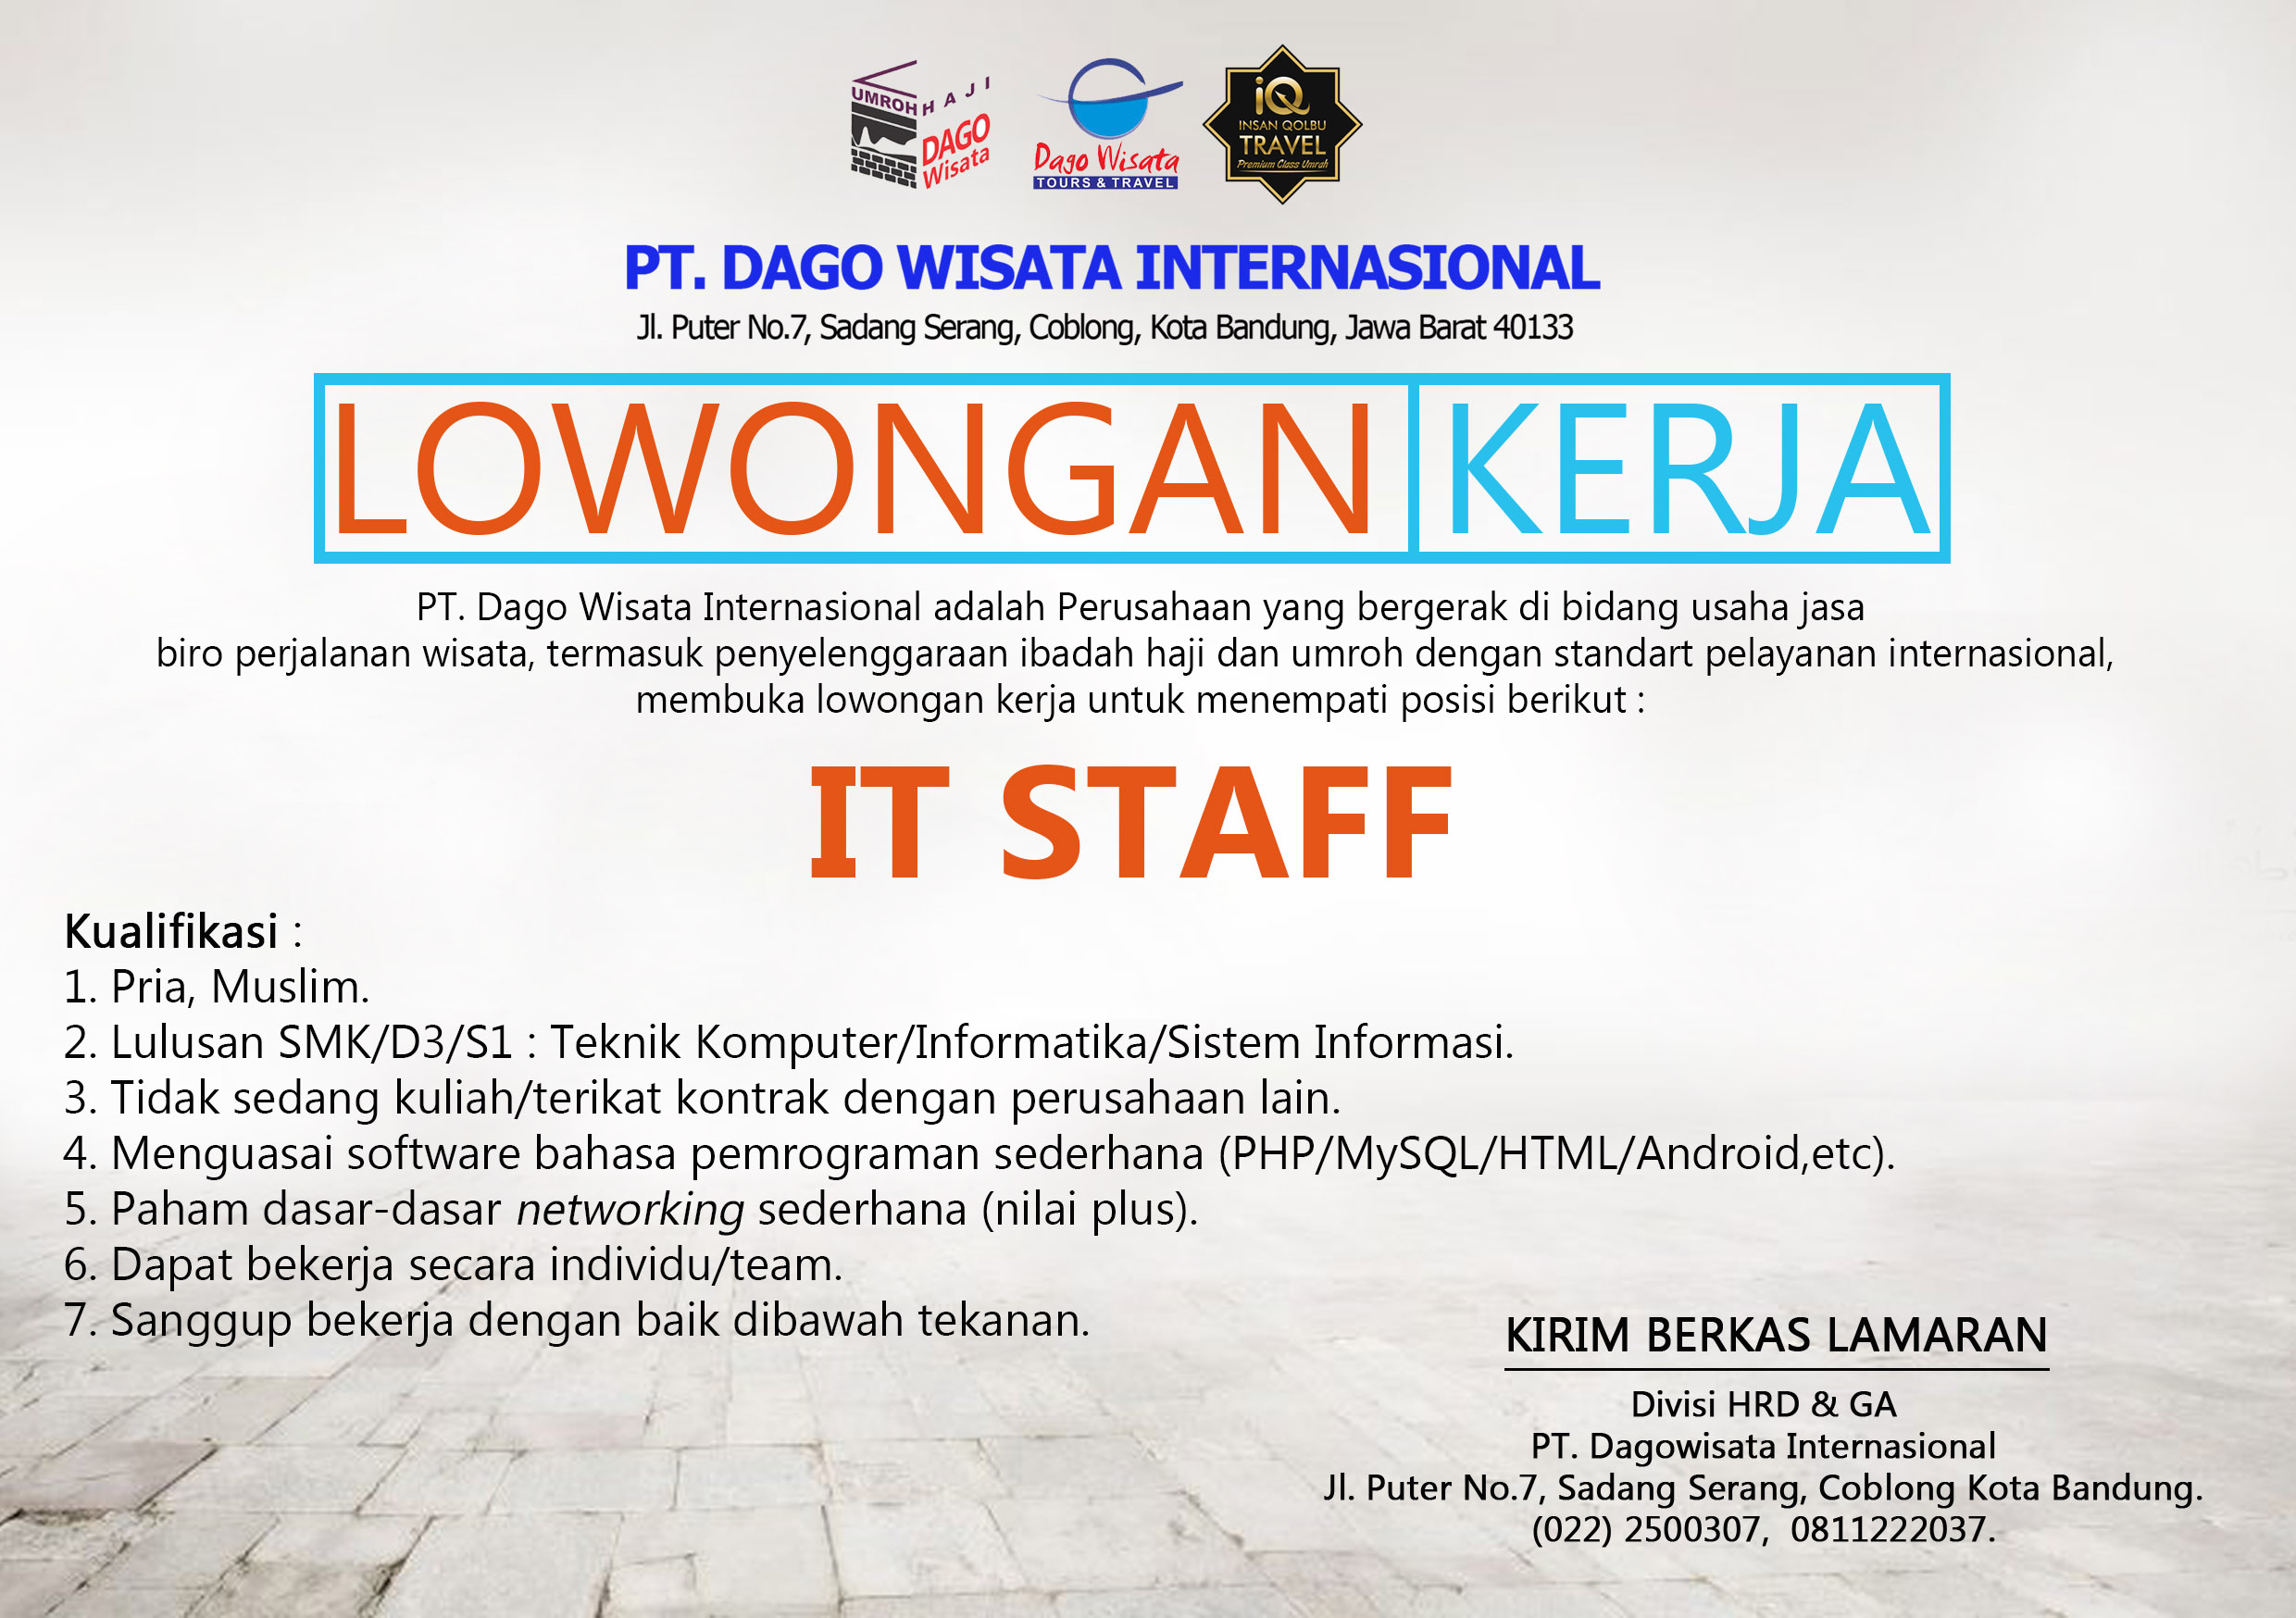 Lowongan Kerja IT Staff PT. DAGO WISATA INTERNASIONAL